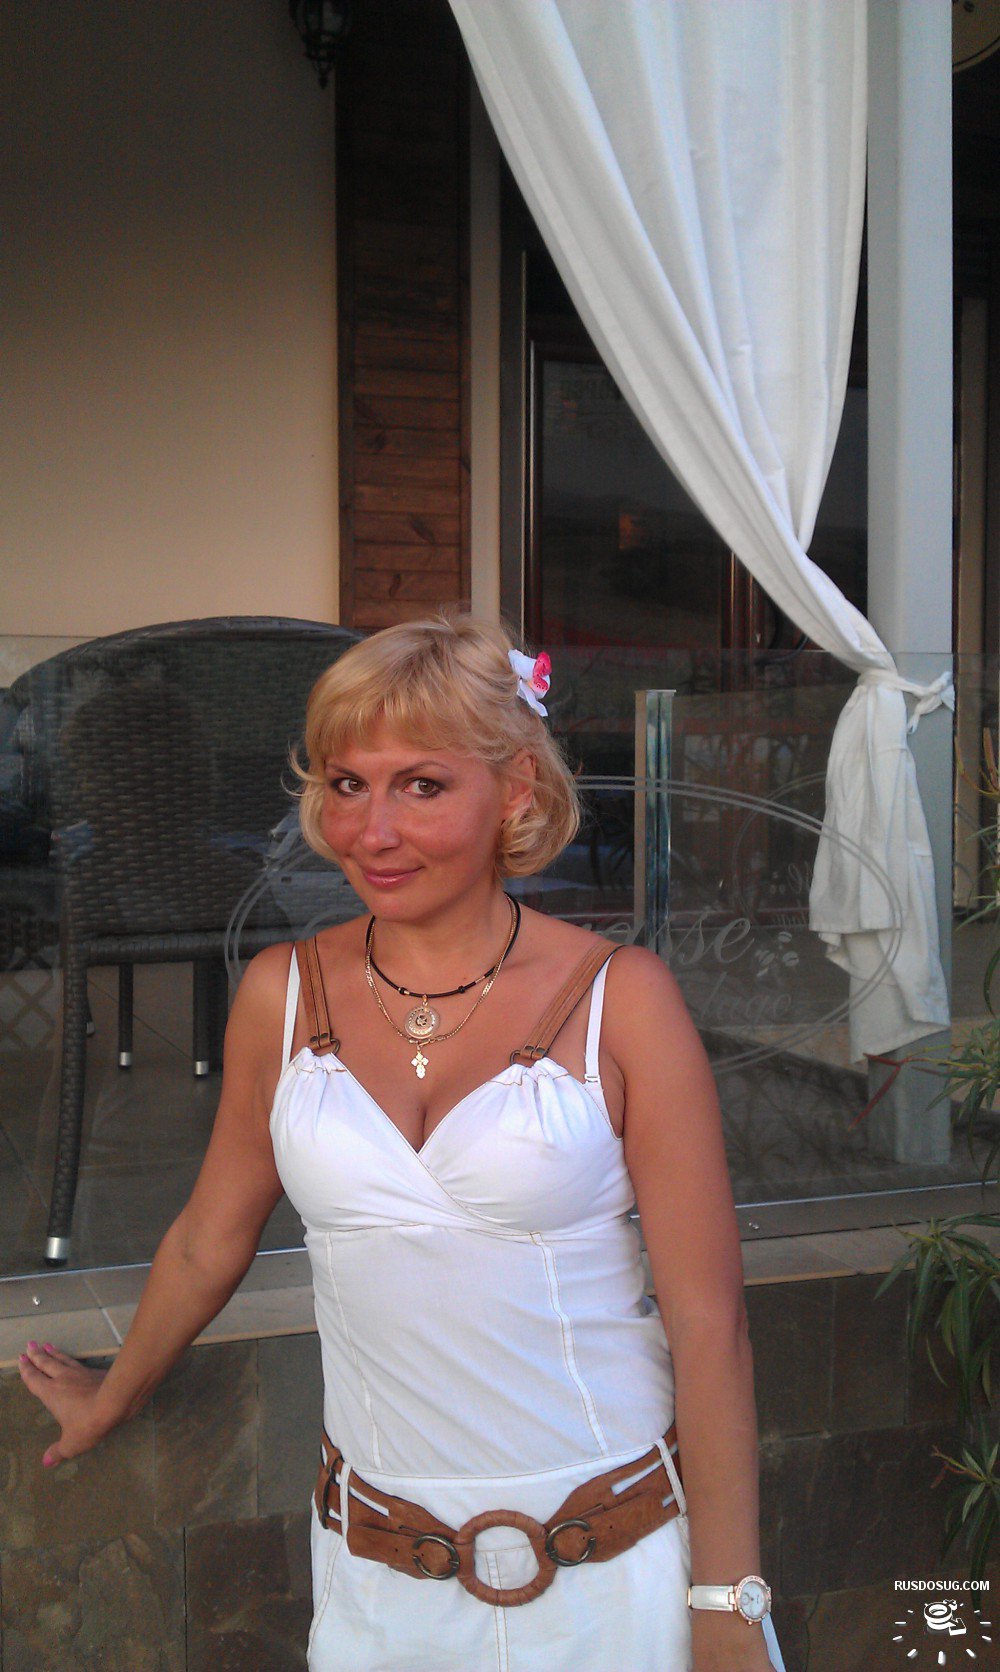 Проститутка Мария возрастом 37 с ростом 170 см для интима в Москве